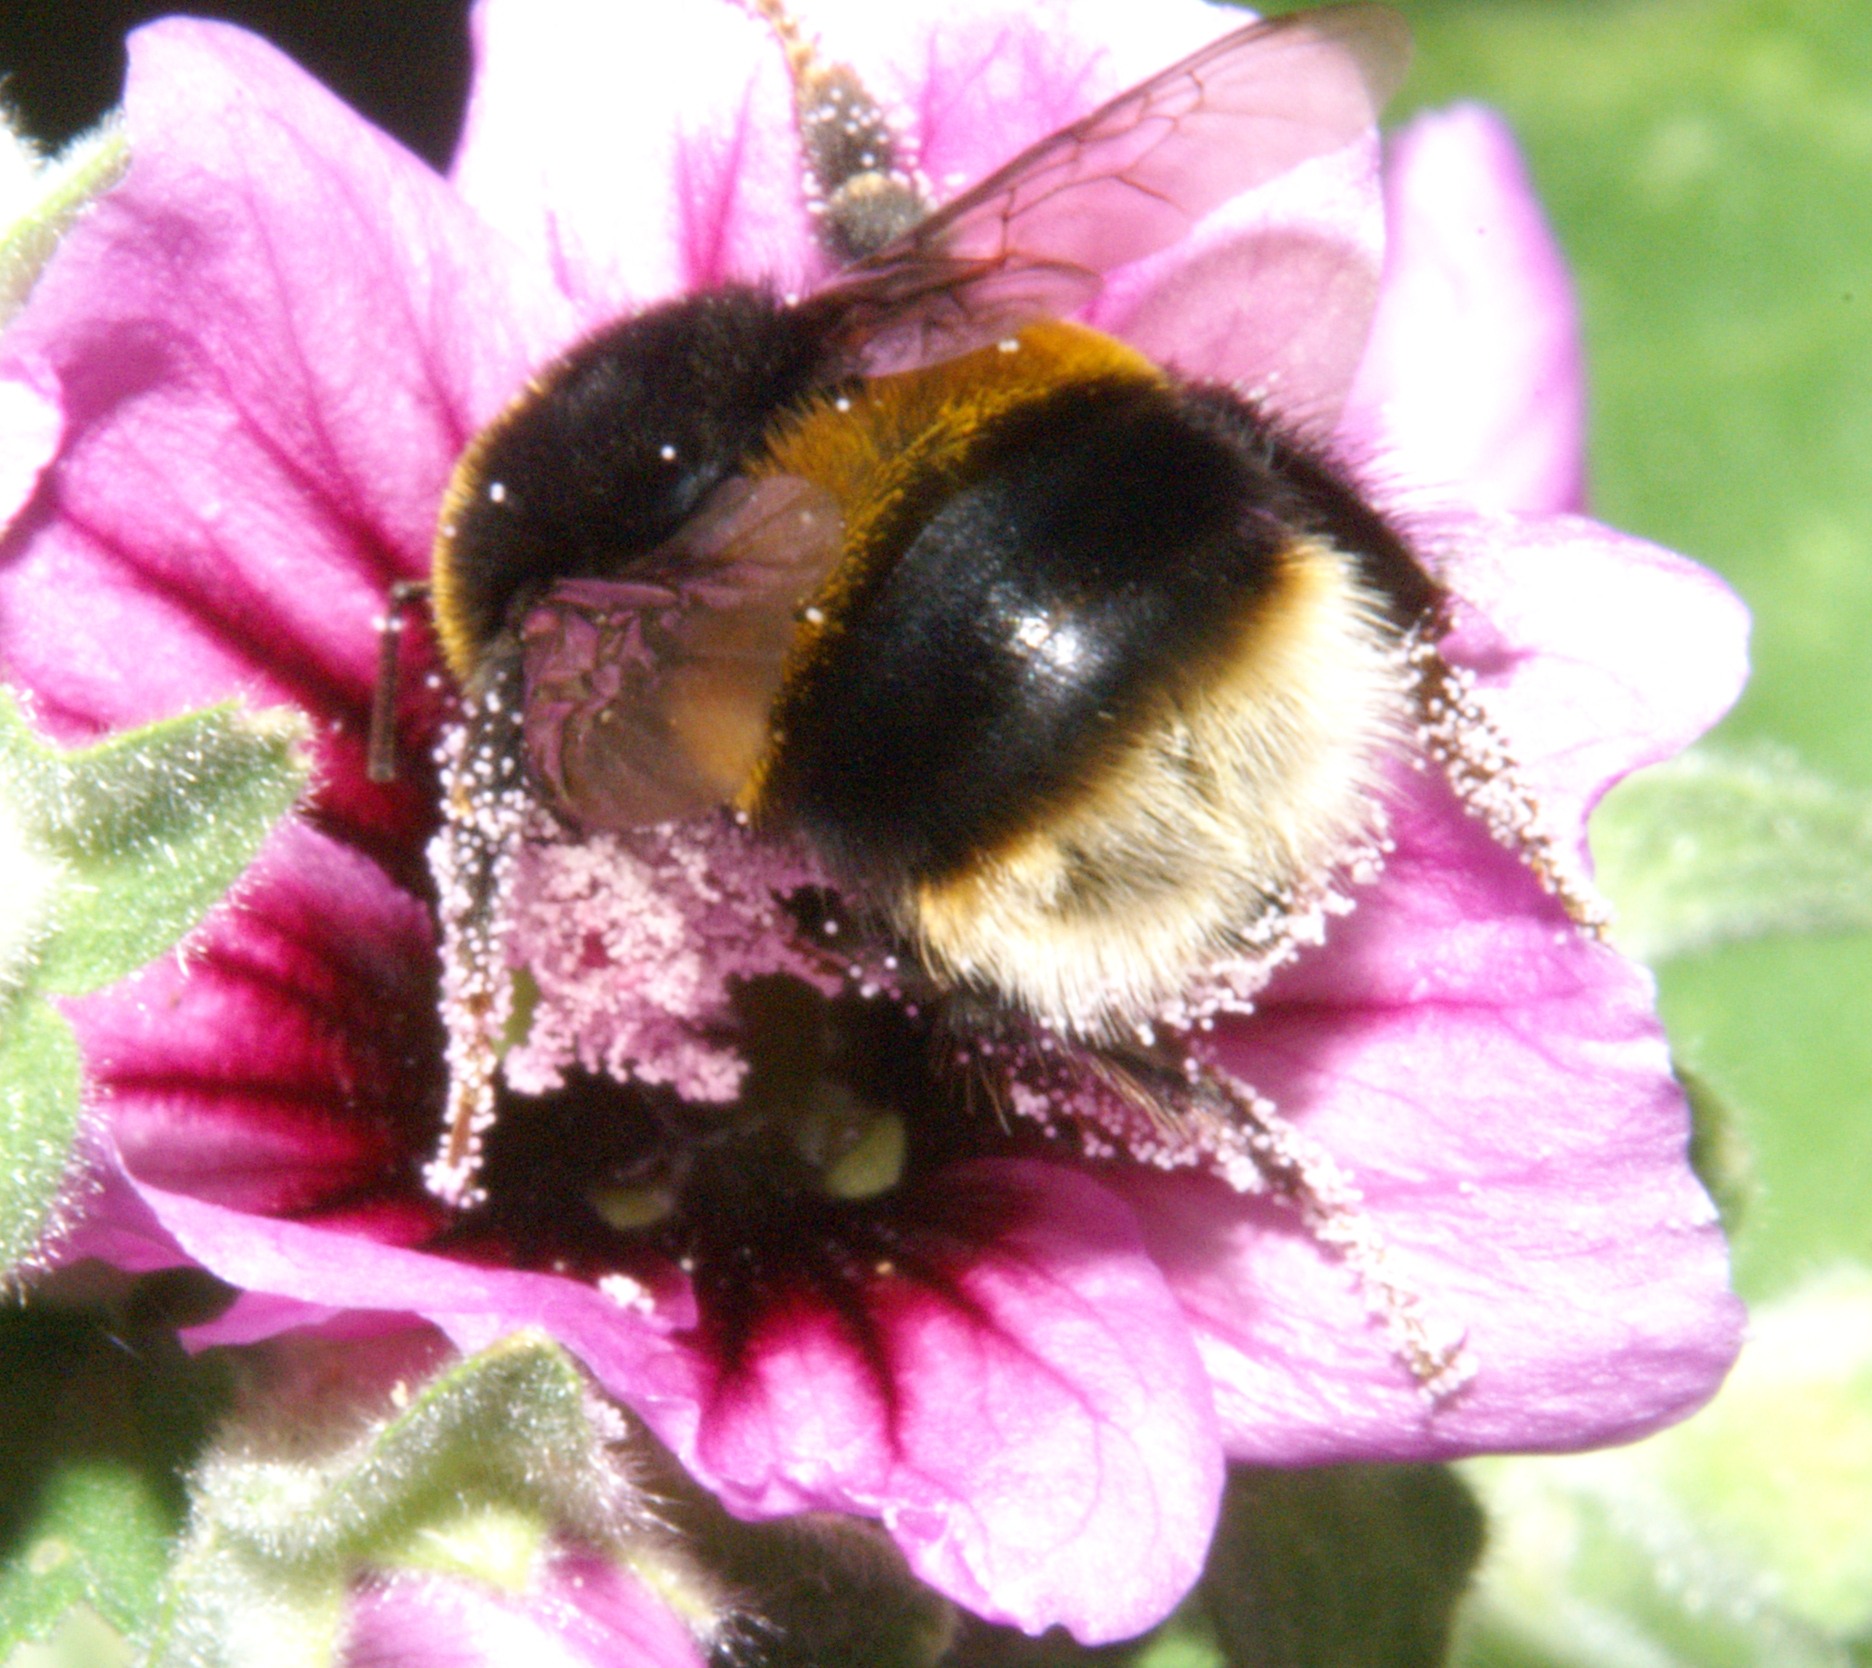 Helping bees through gardening